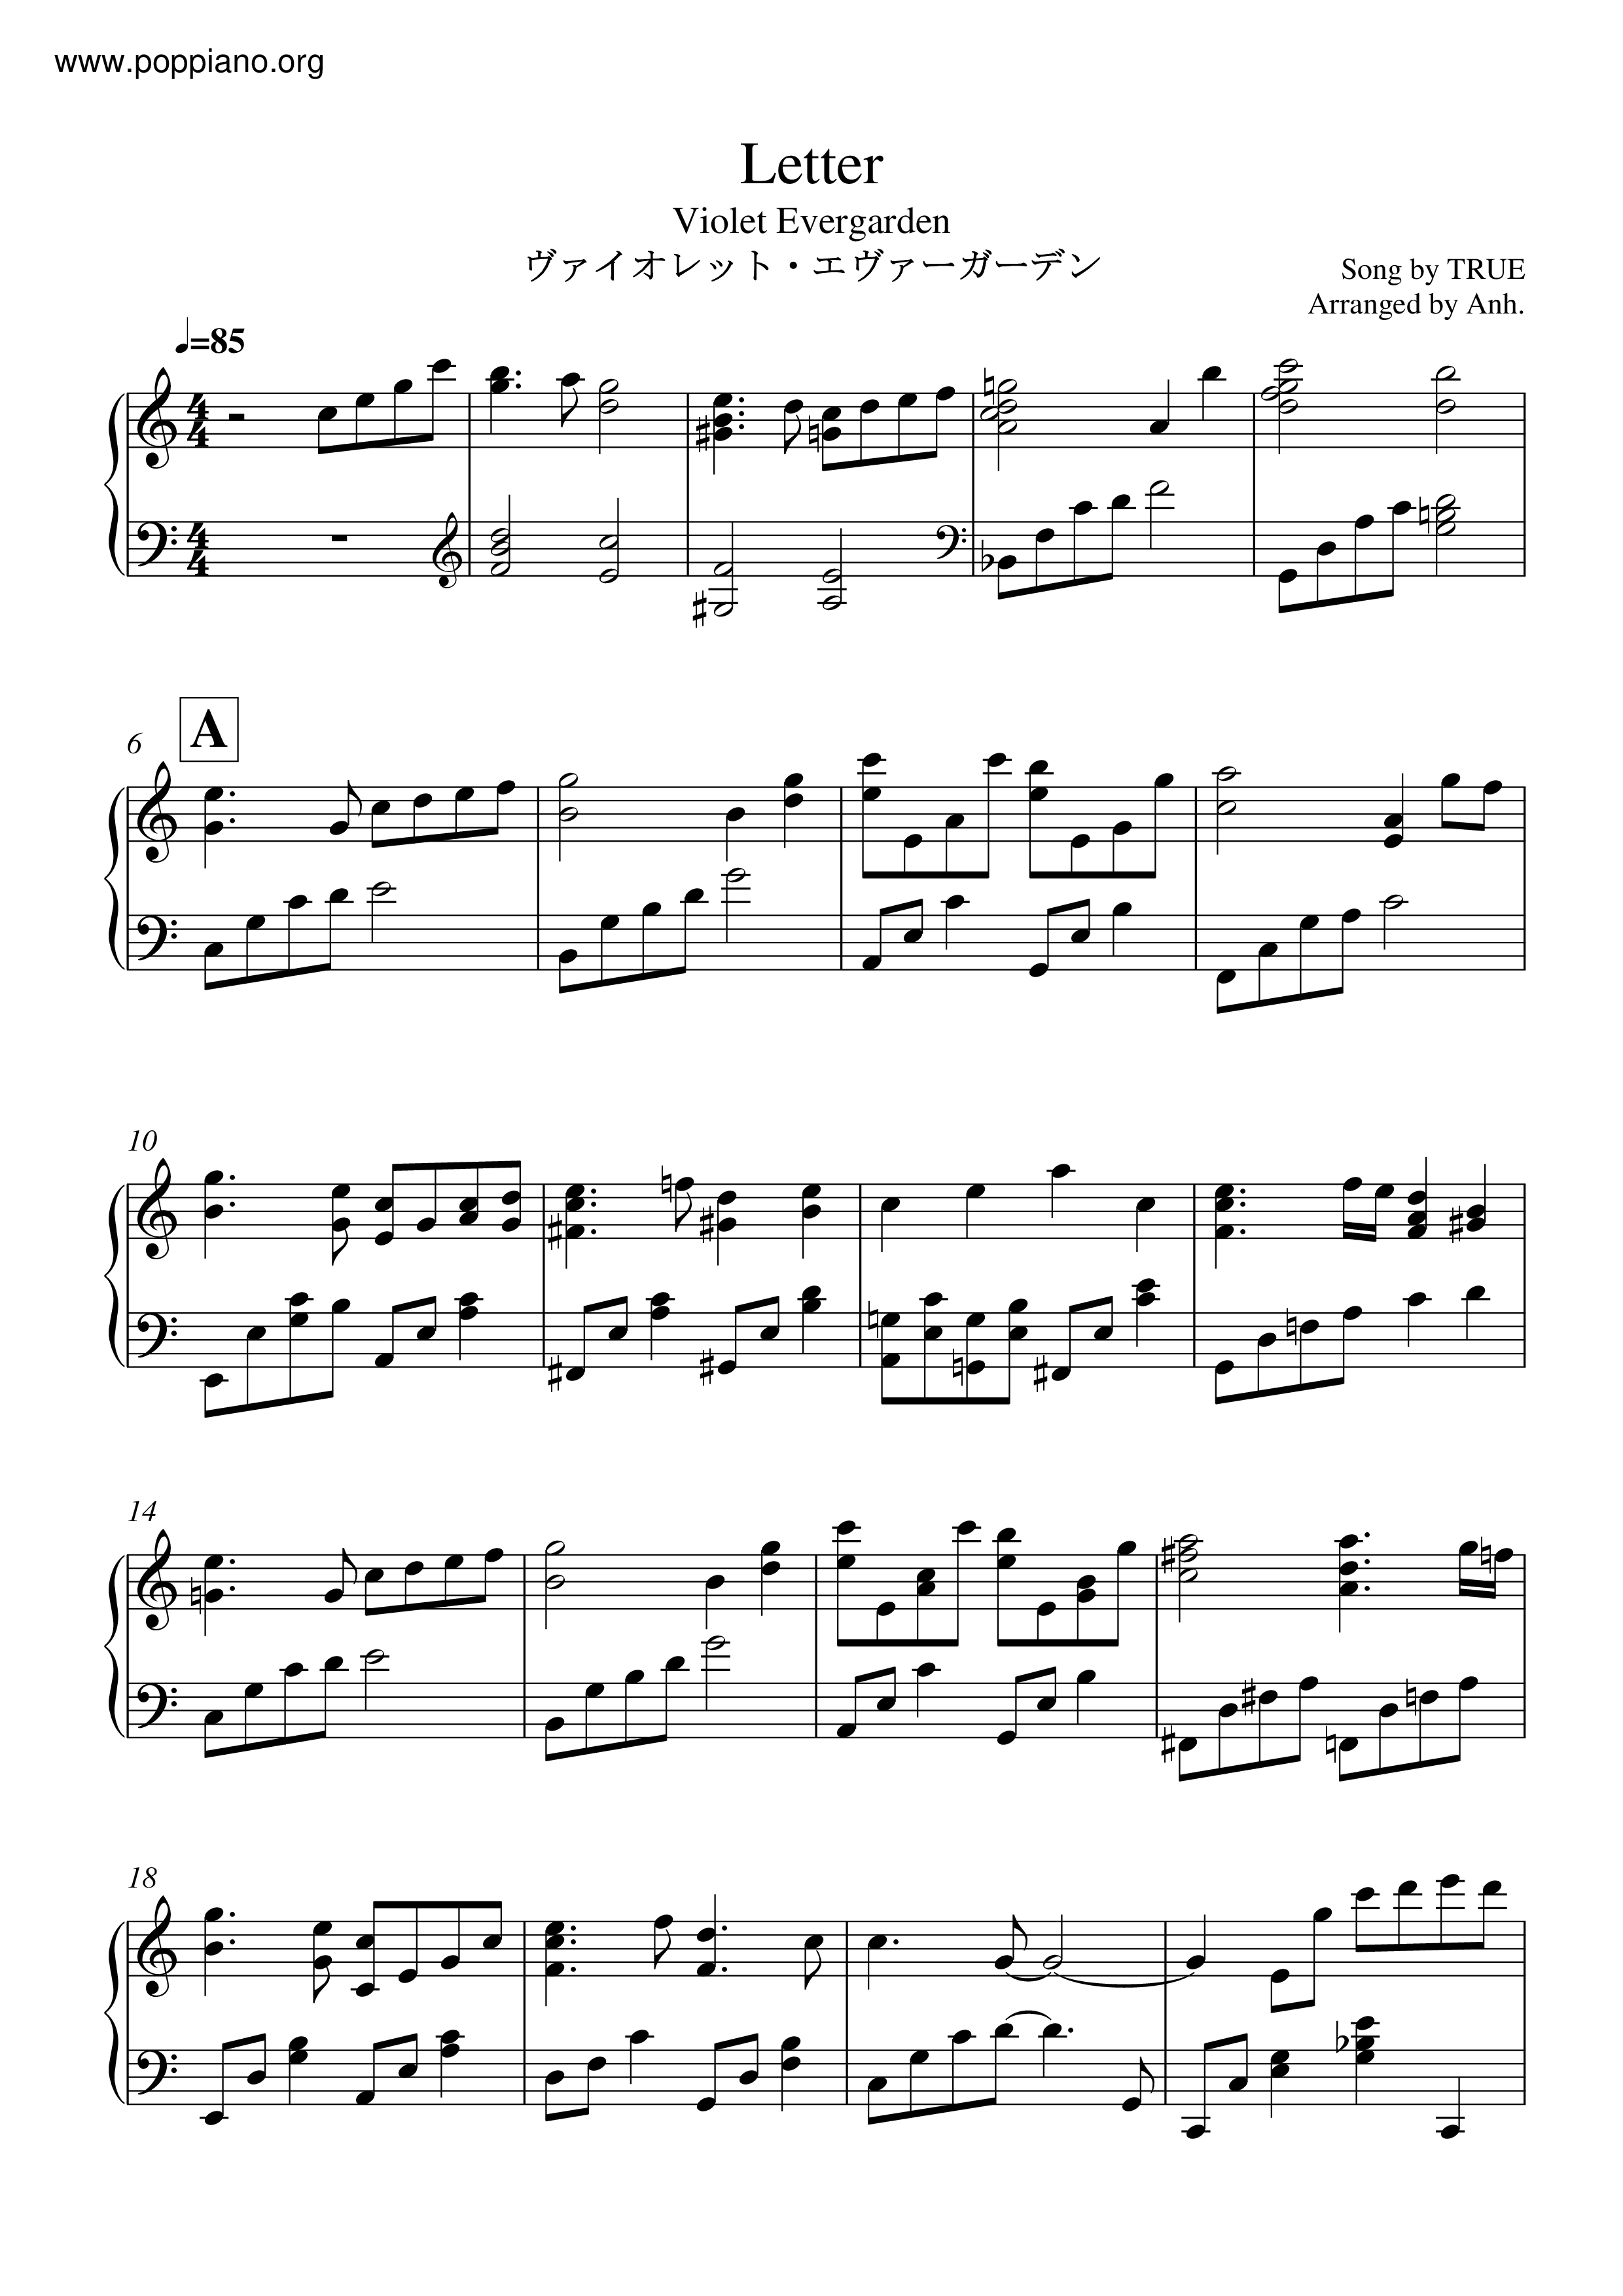 Violet Evergarden - Letter Violet Score